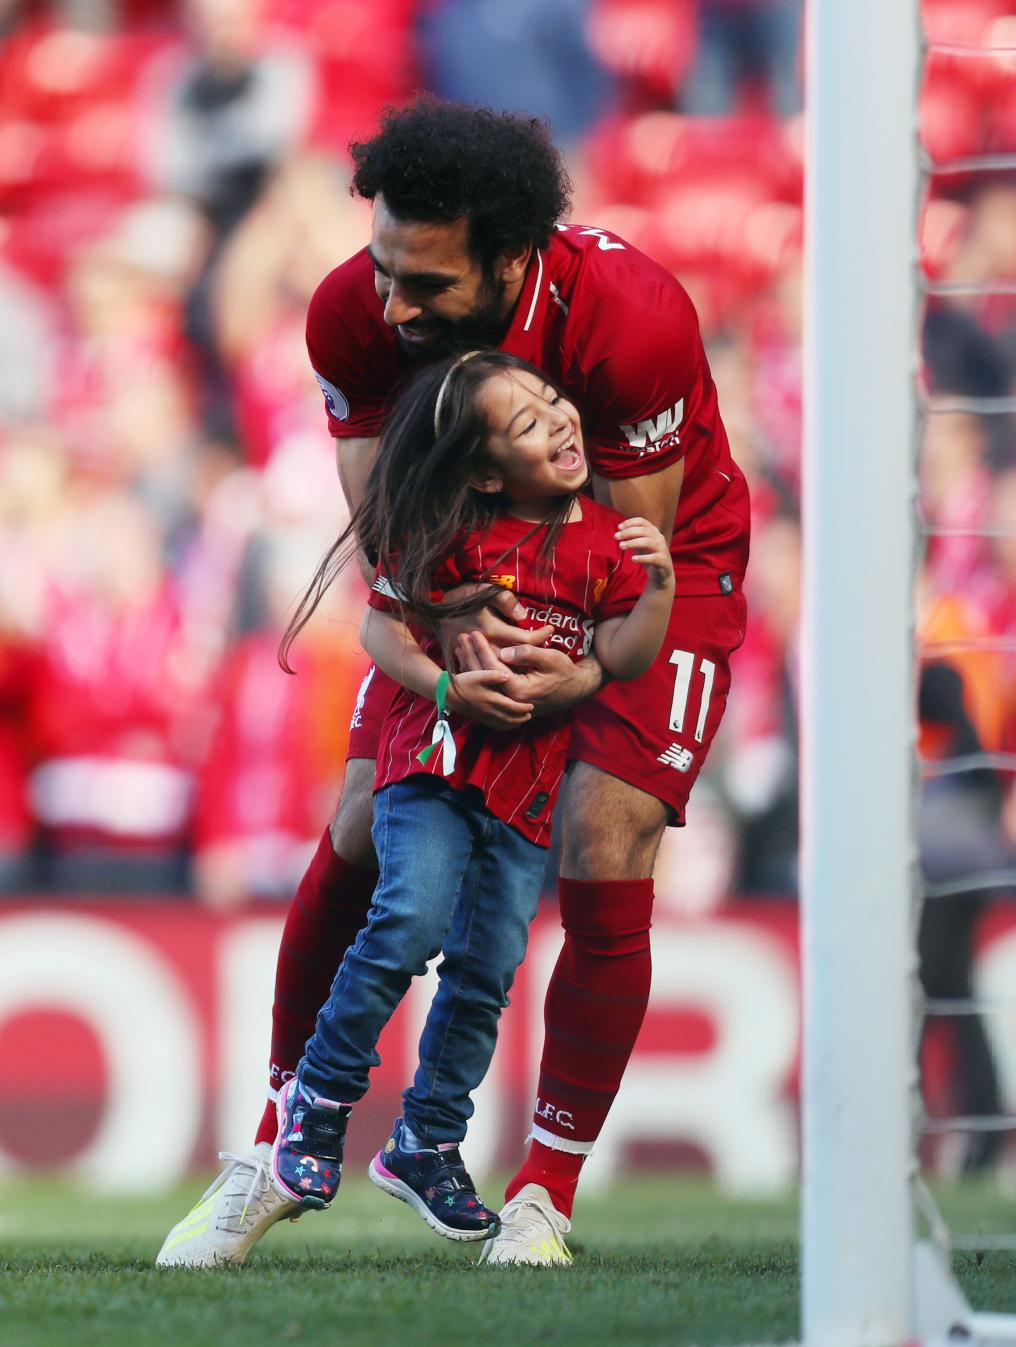 Mo Salah and his daughter after a match